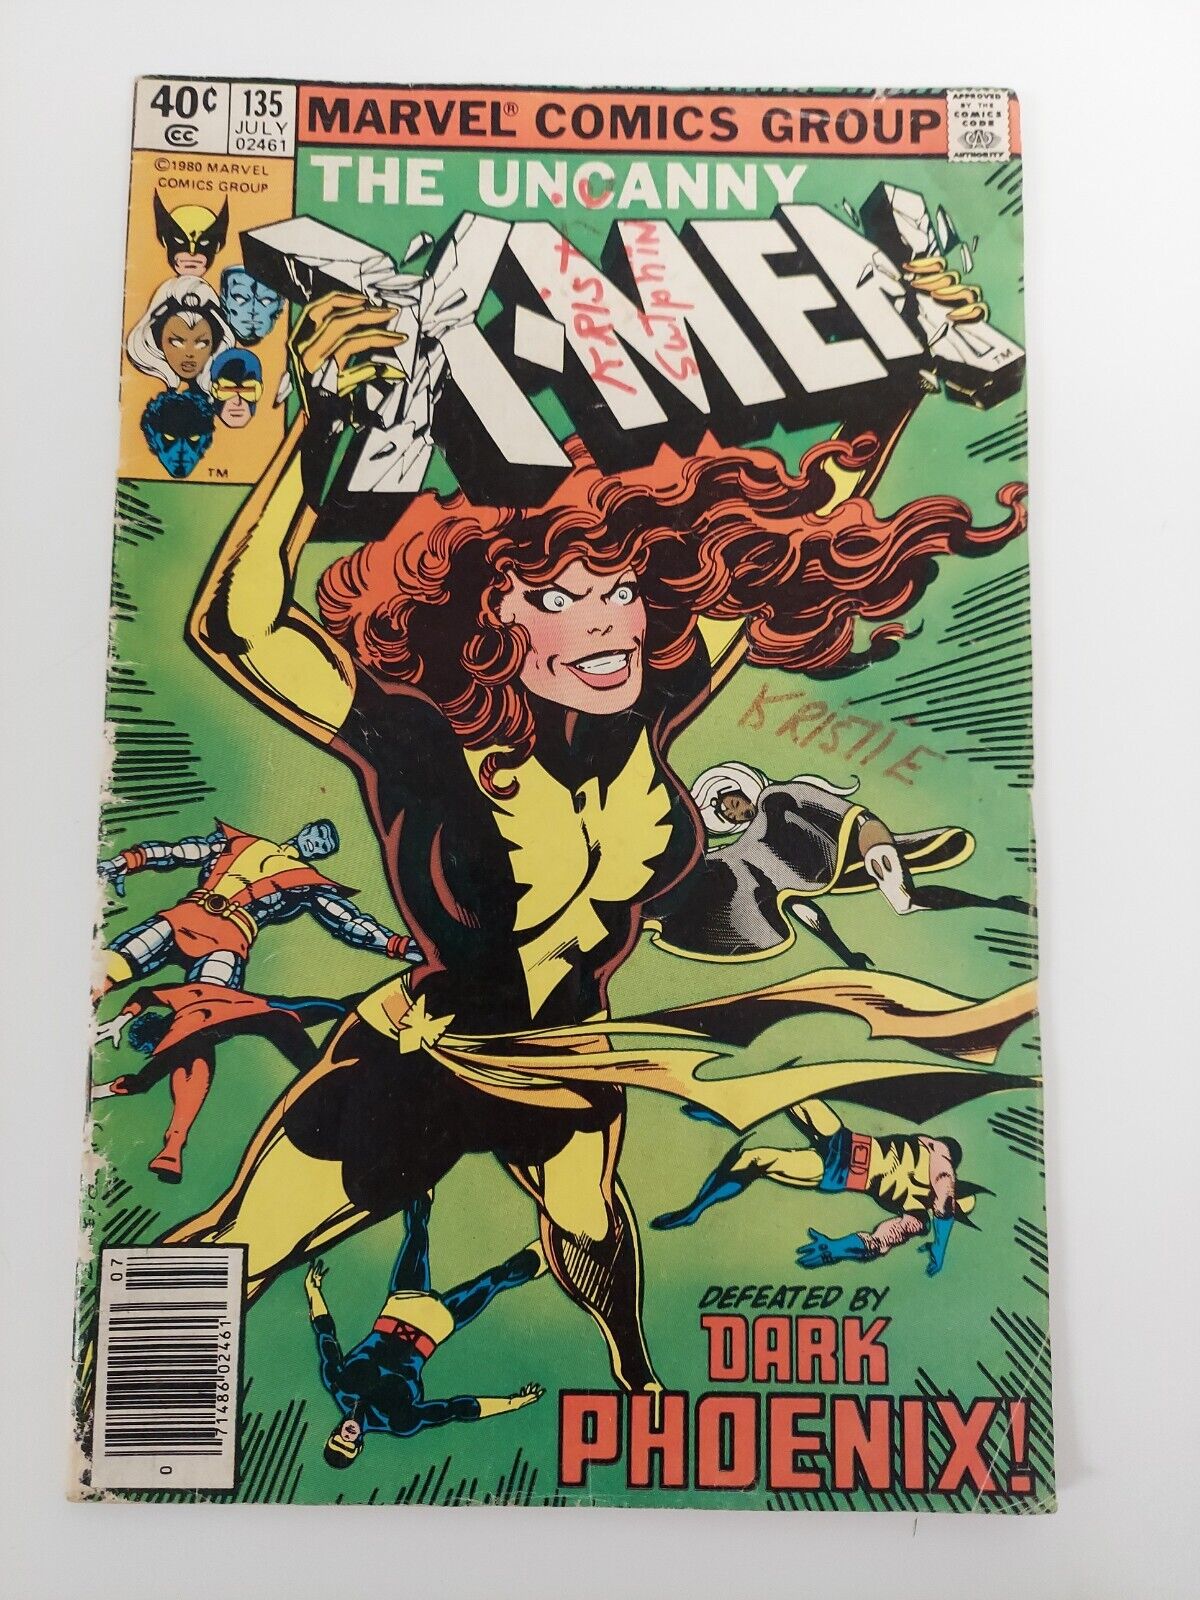 The Uncanny X-Men #135 (1st Appearance of Senator Robert Kelly)